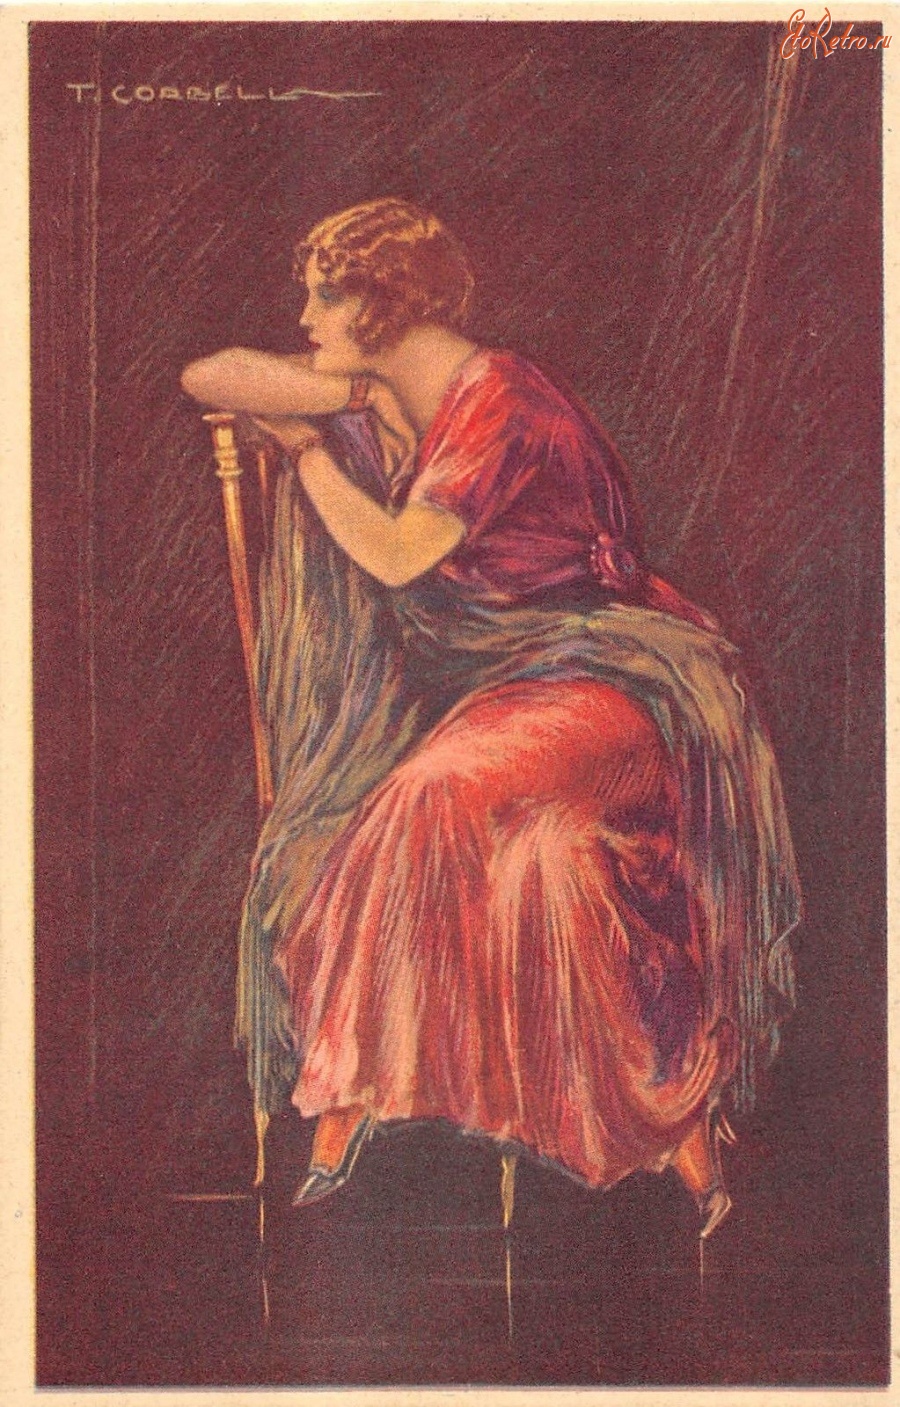 Ретро открытки - Портрет женщины в красном платье